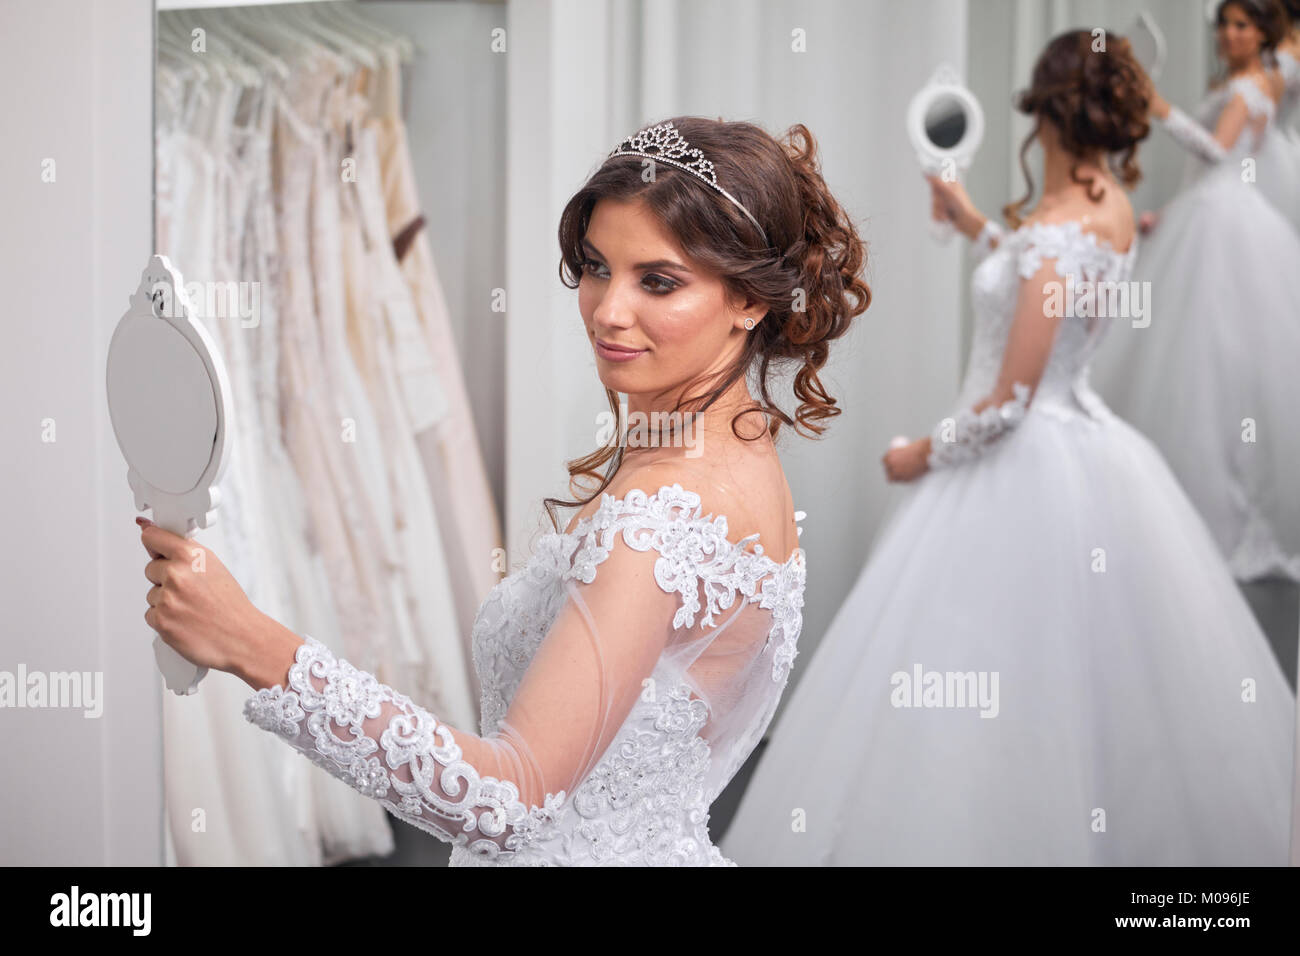 Une jeune mariée, se voir dans un miroir, bridal salon, vêtu d'une blouse. Banque D'Images